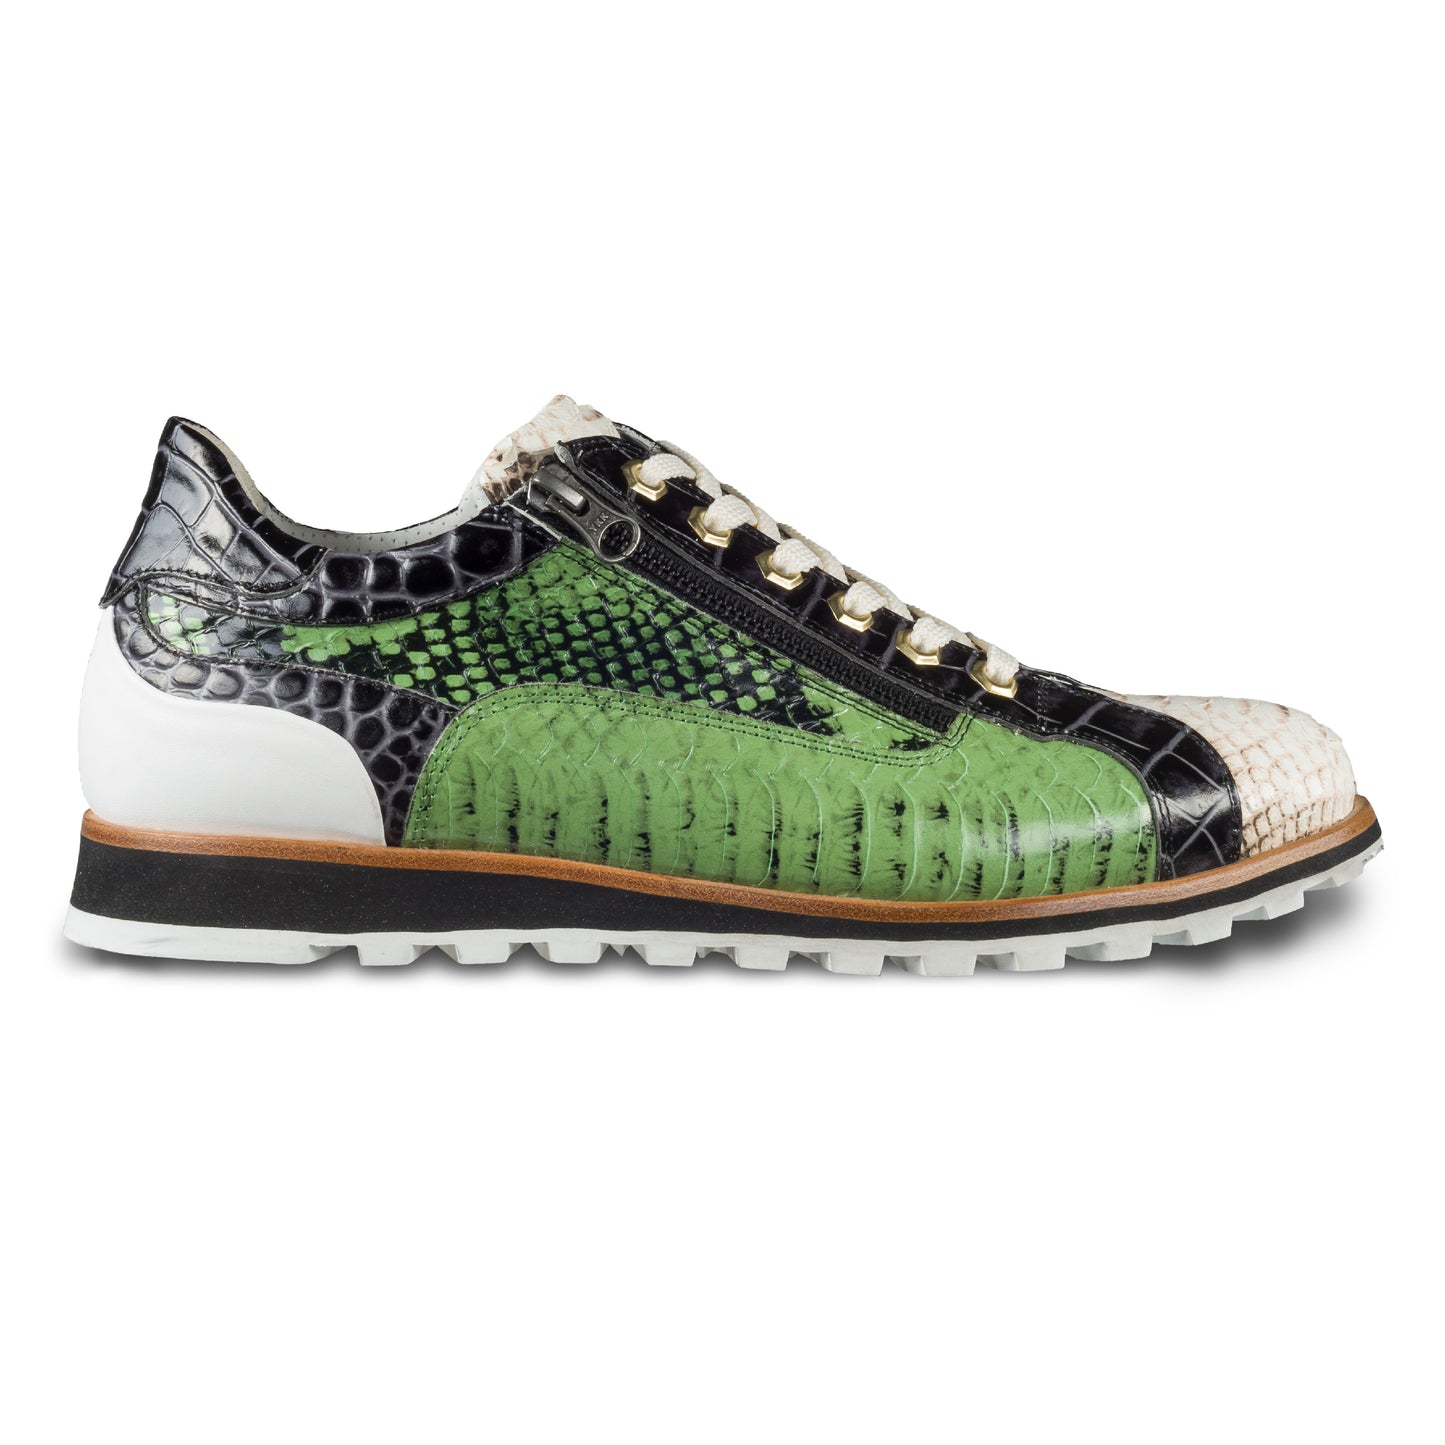 Lorenzi Herren Leder Sneaker in grün / creme / schwarzer Schlangen-Optik und seitlichem Reißverschluß. Handgefertigt in Italien. Ansicht der Außenseite rechter Schuh. 